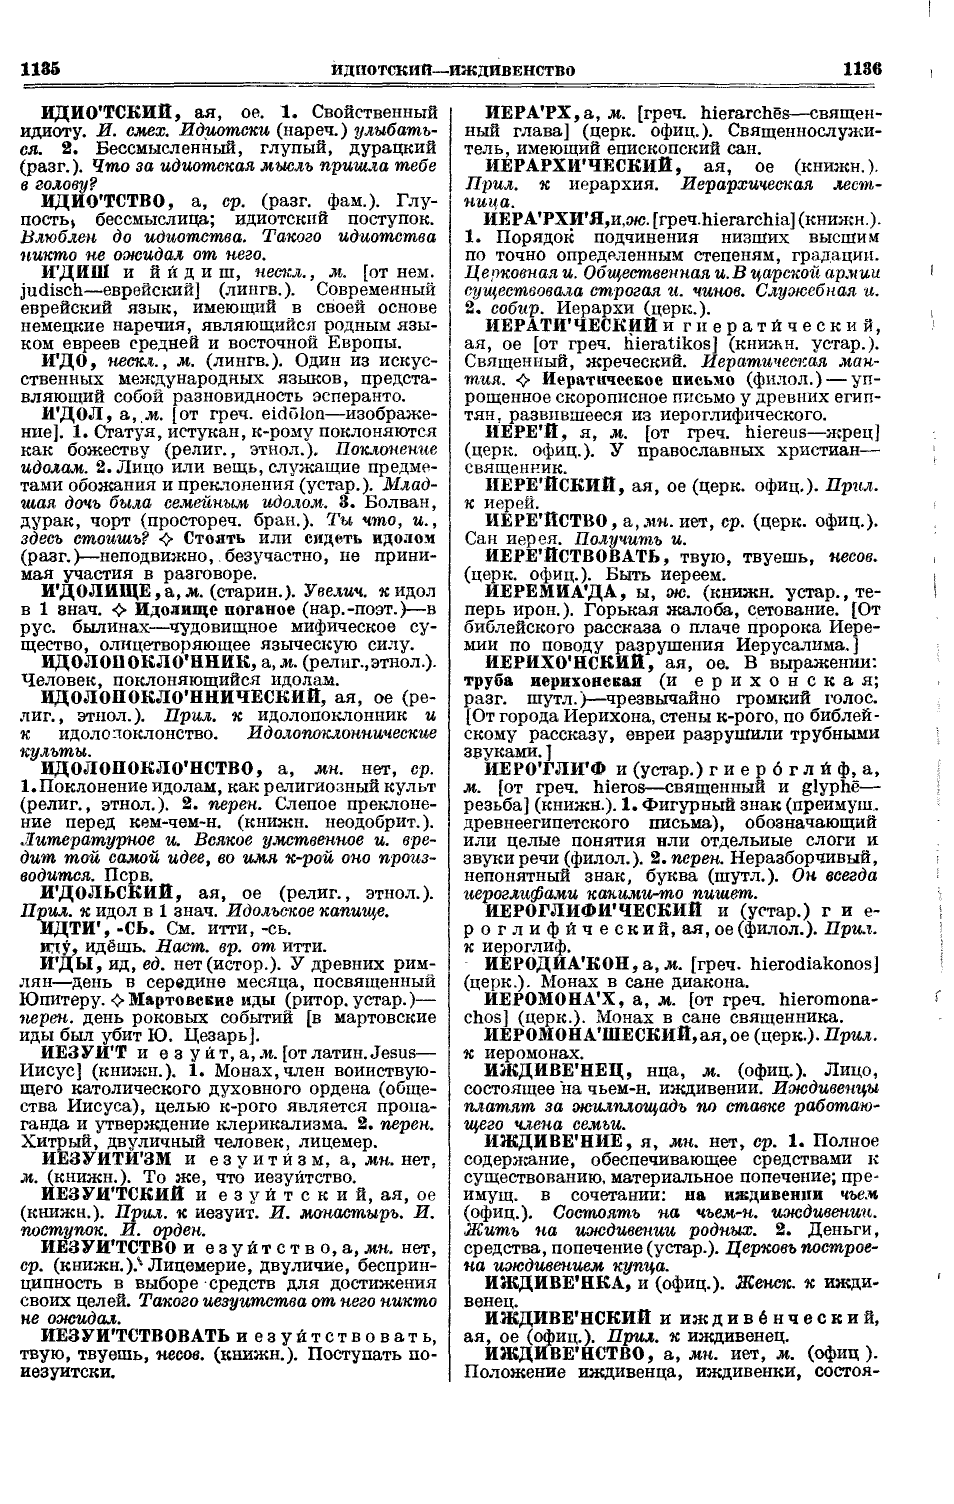 Фотокопия pdf / скан страницы 606 толкового словаря Ушакова (том 1)